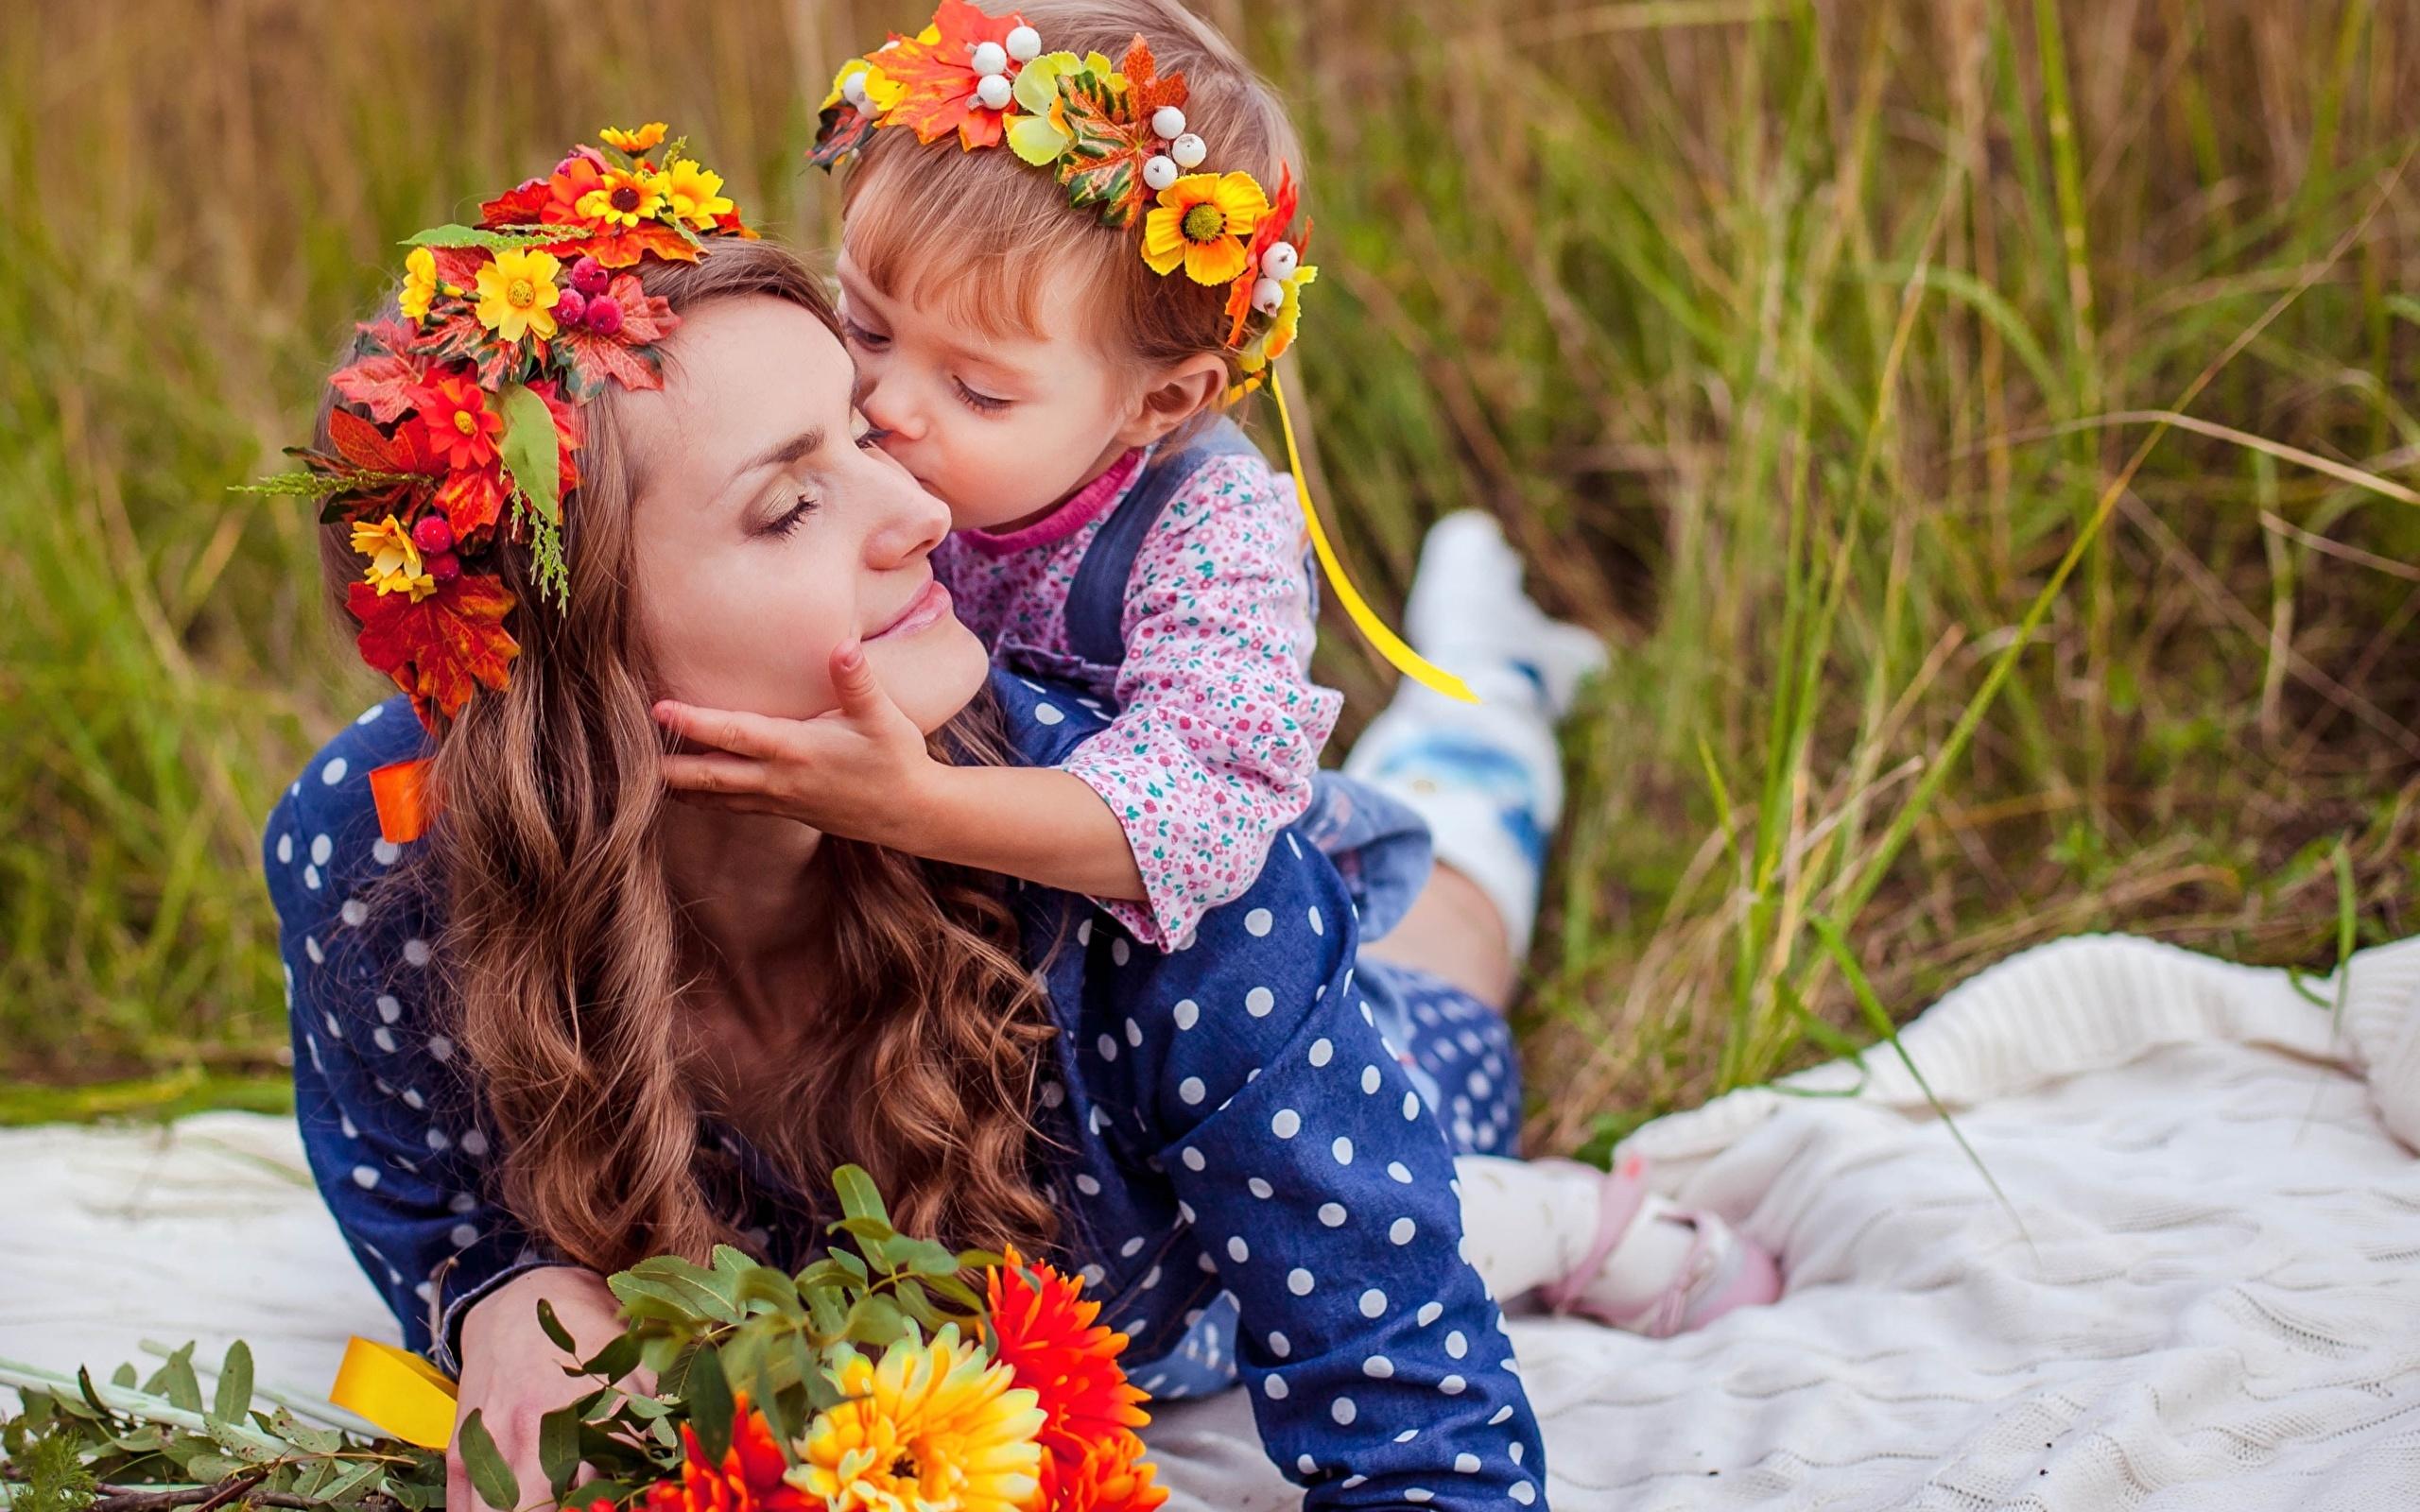 Фотки день мама. Мать с ребенком. Красивая мама. Дети с цветами. Фотосессия ко Дню матери.